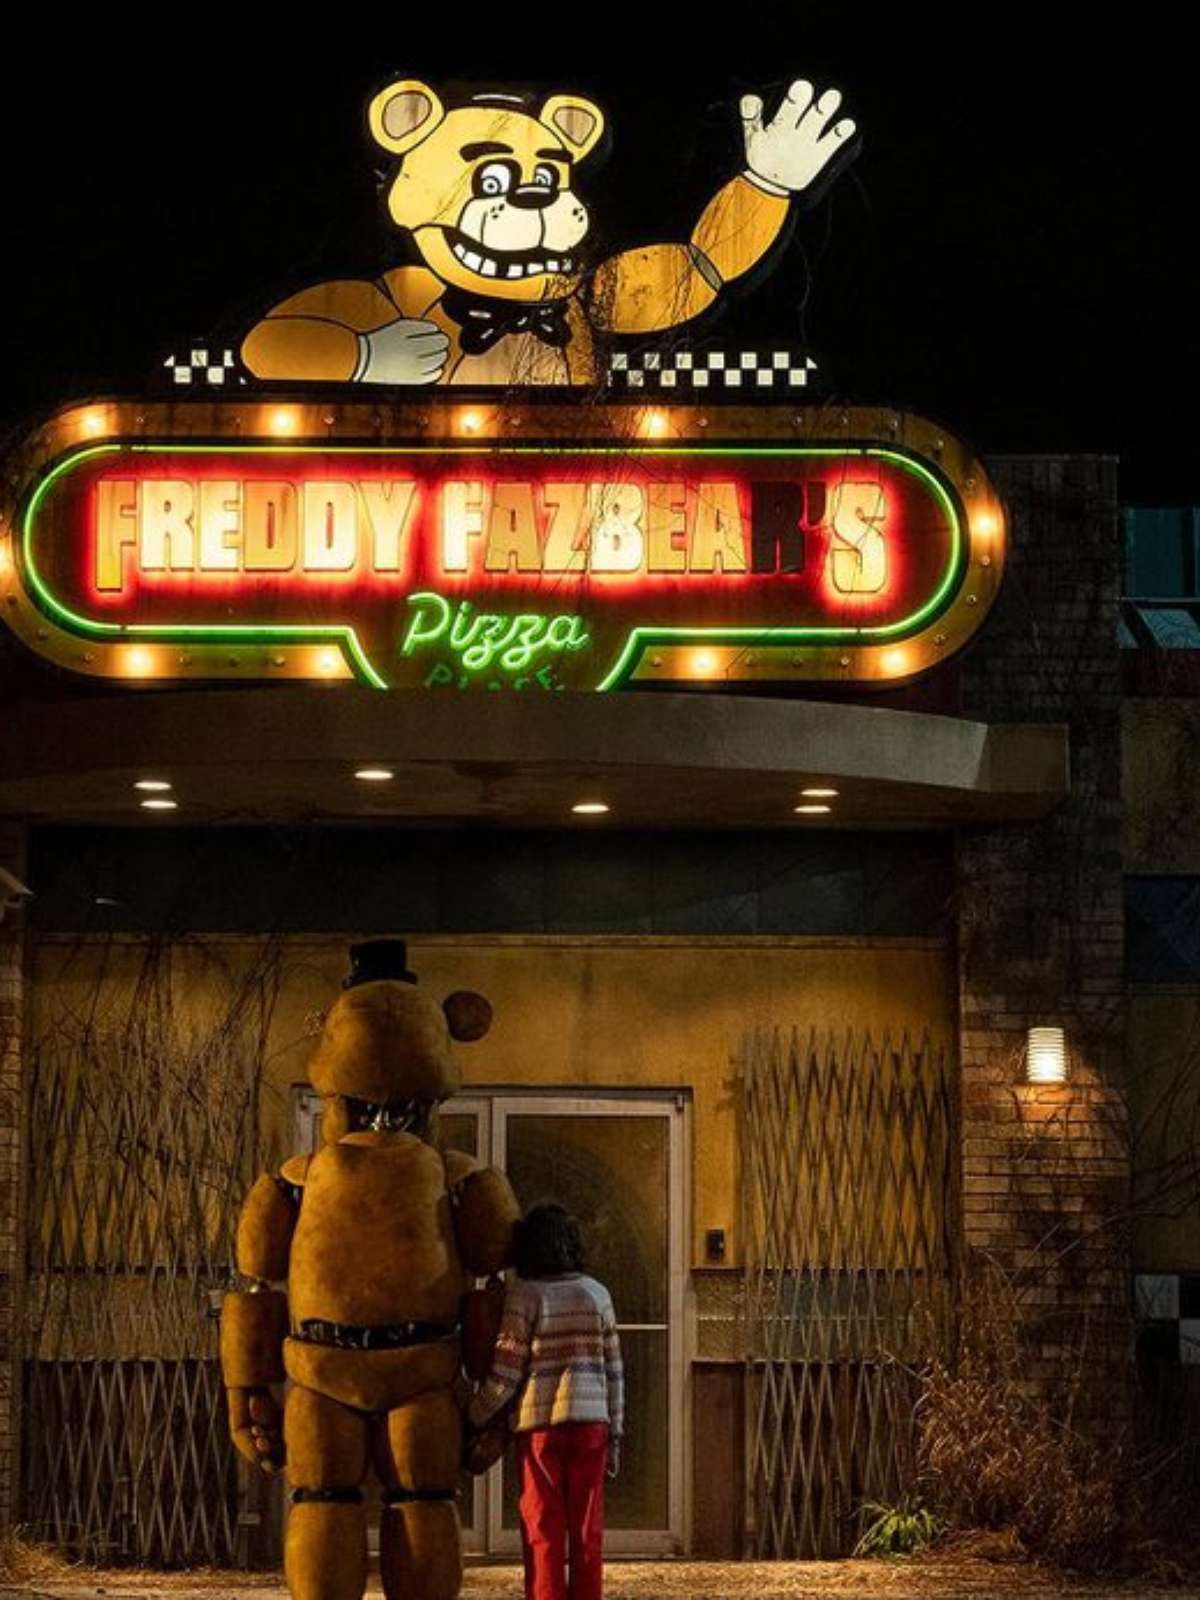 É fã de filmes de terror? Five Nights at Freddy's e mais estão em cartaz  nos cinemas durante o Halloween - TNH1